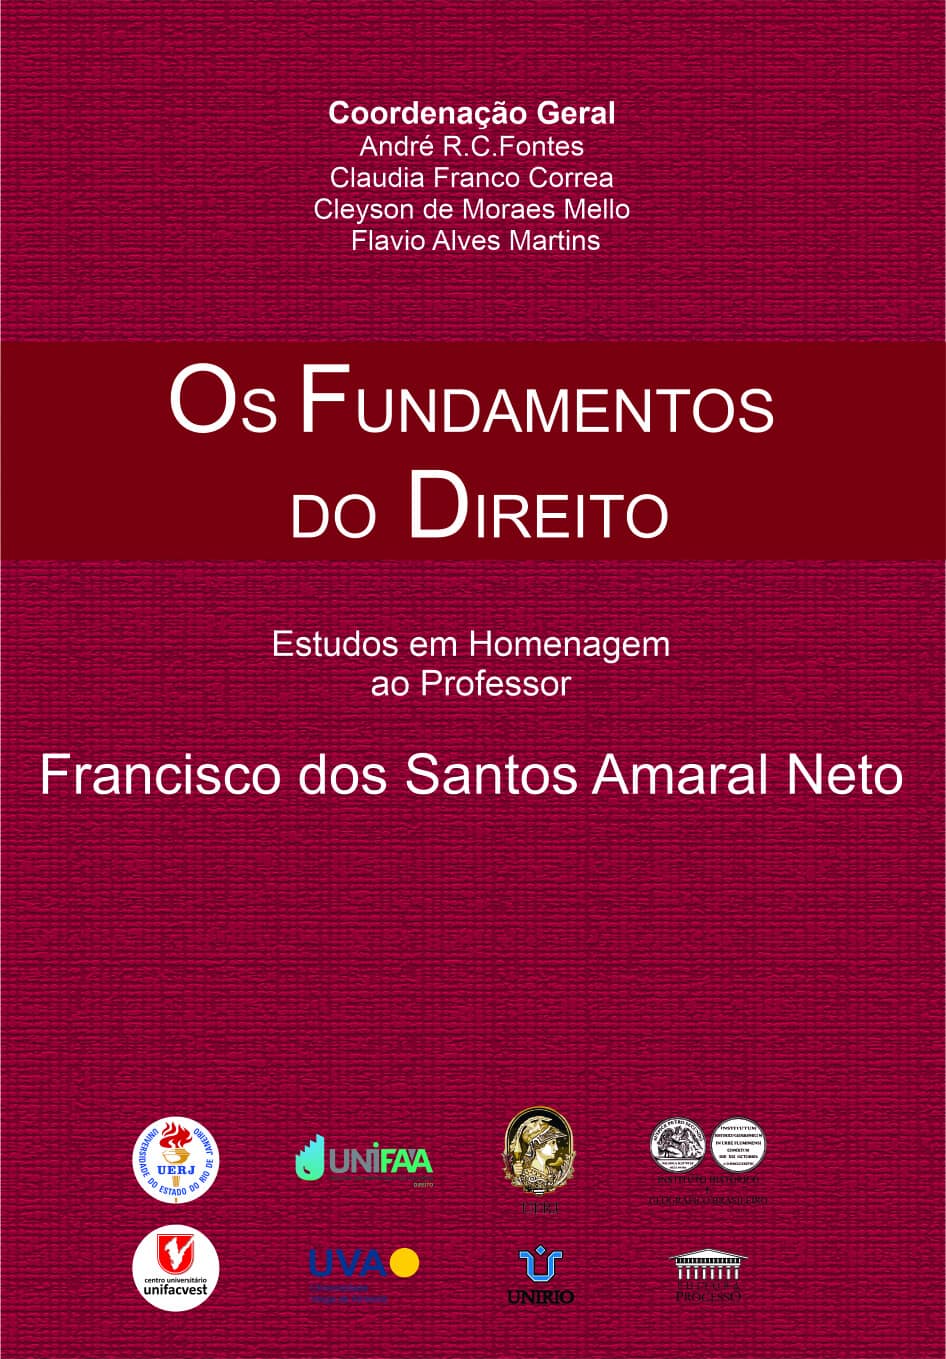 Foto 1 - Os Fundamentos do Direito - Estudos em Homenagem ao Professor, Francisco dos Santos Amaral Neto